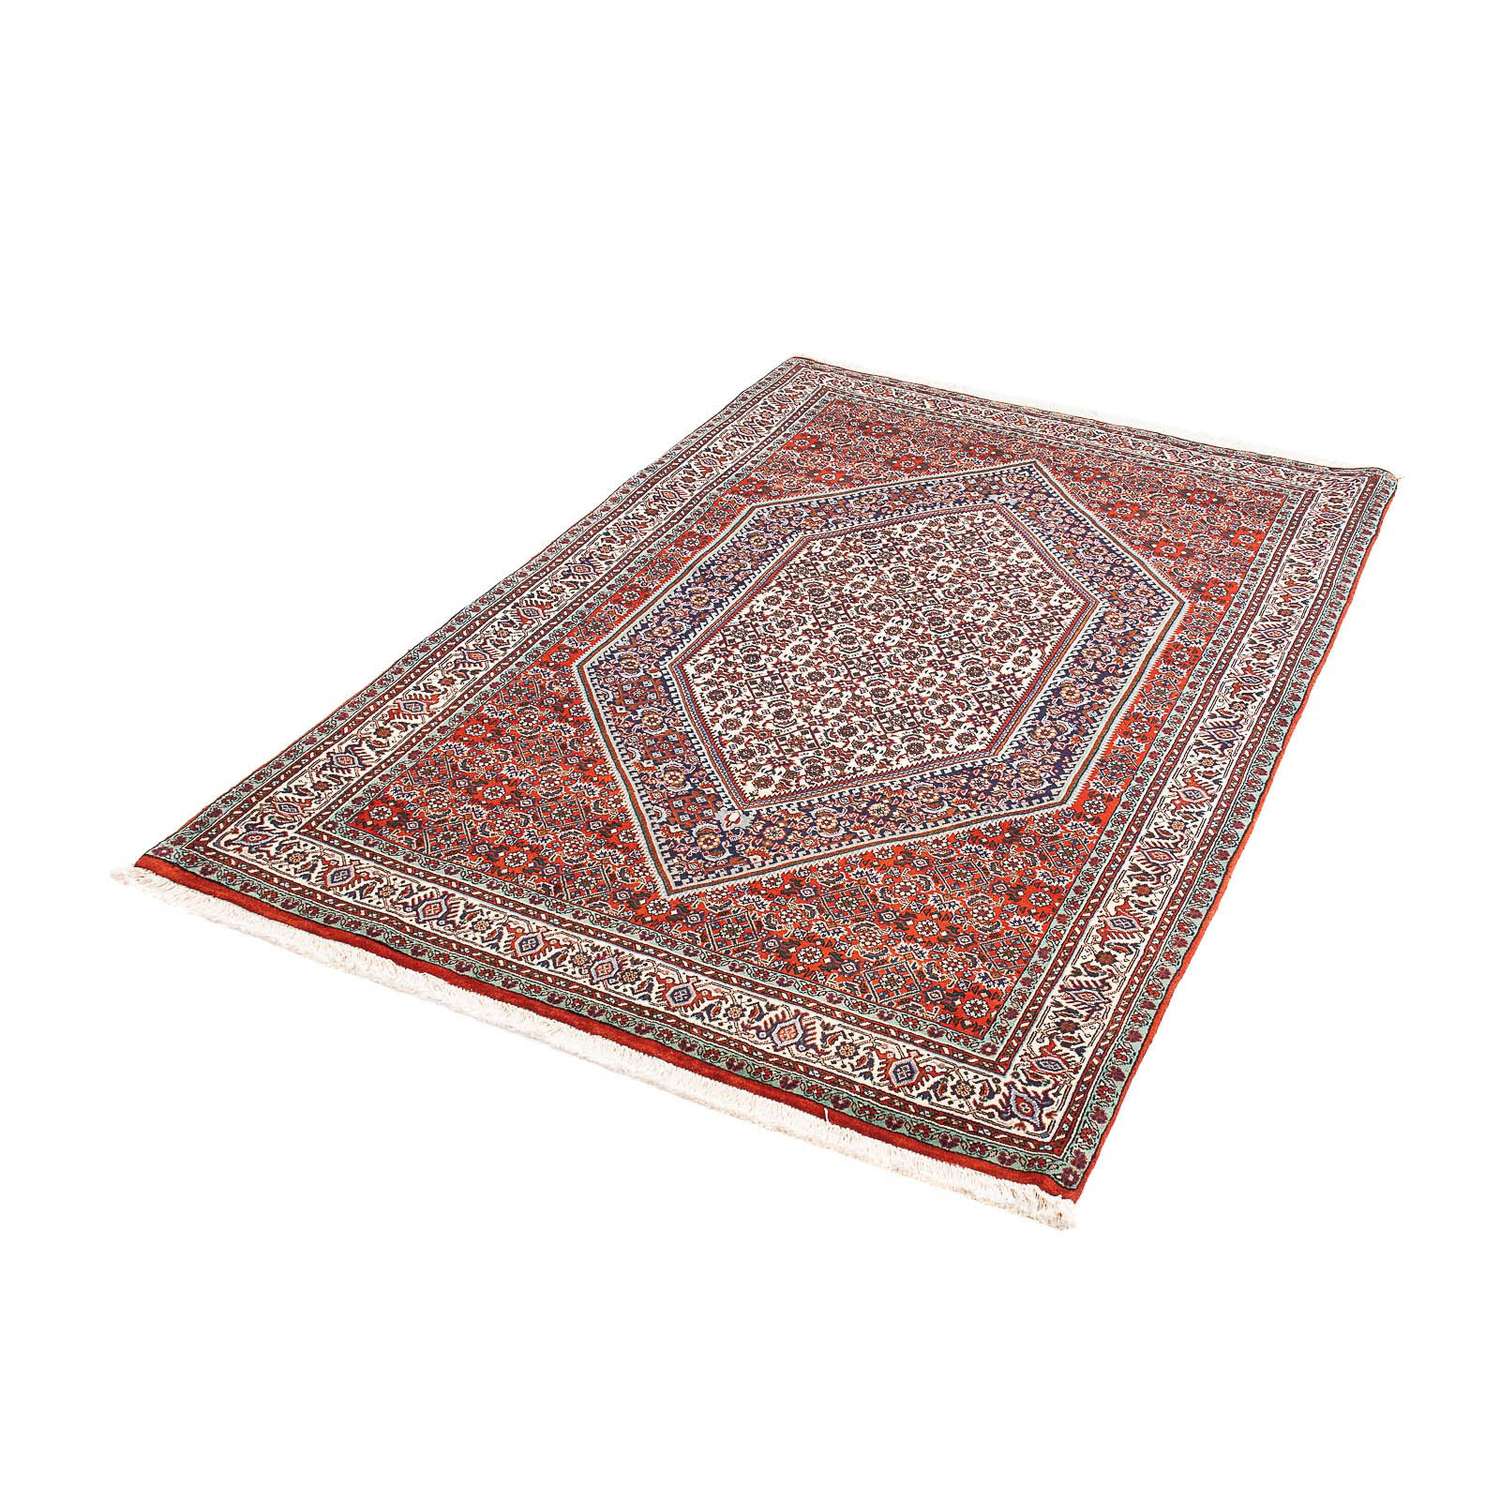 Persisk matta - Bijar - 164 x 110 cm - röd